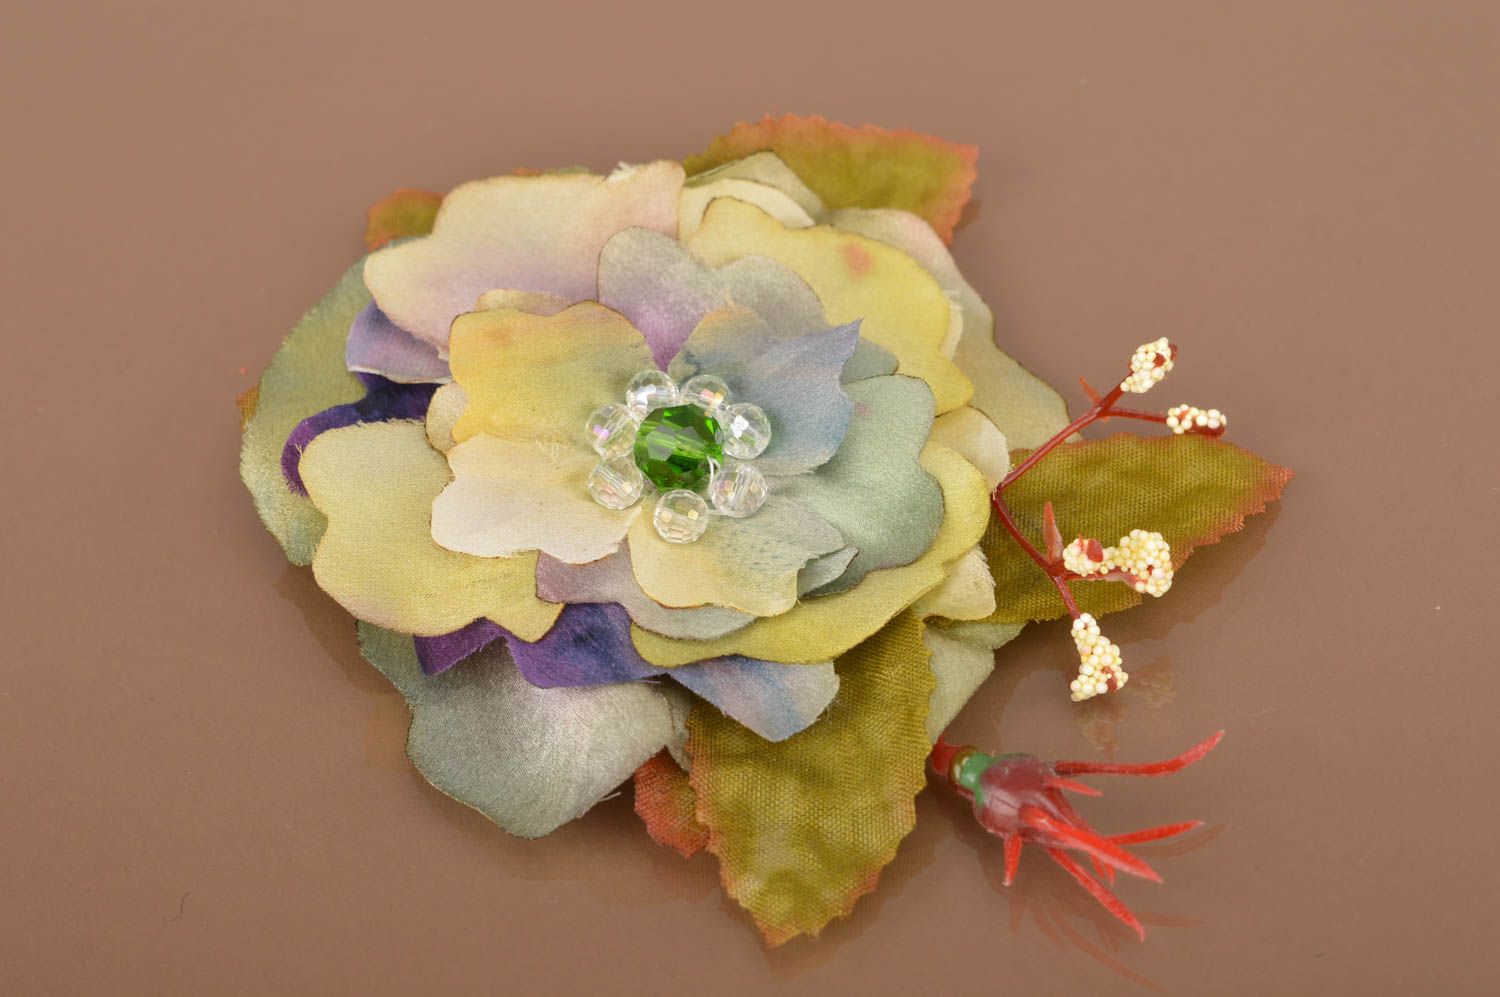 Брошь цветок из ткани небольшая необычной расцветки батик ручной работы фото 5